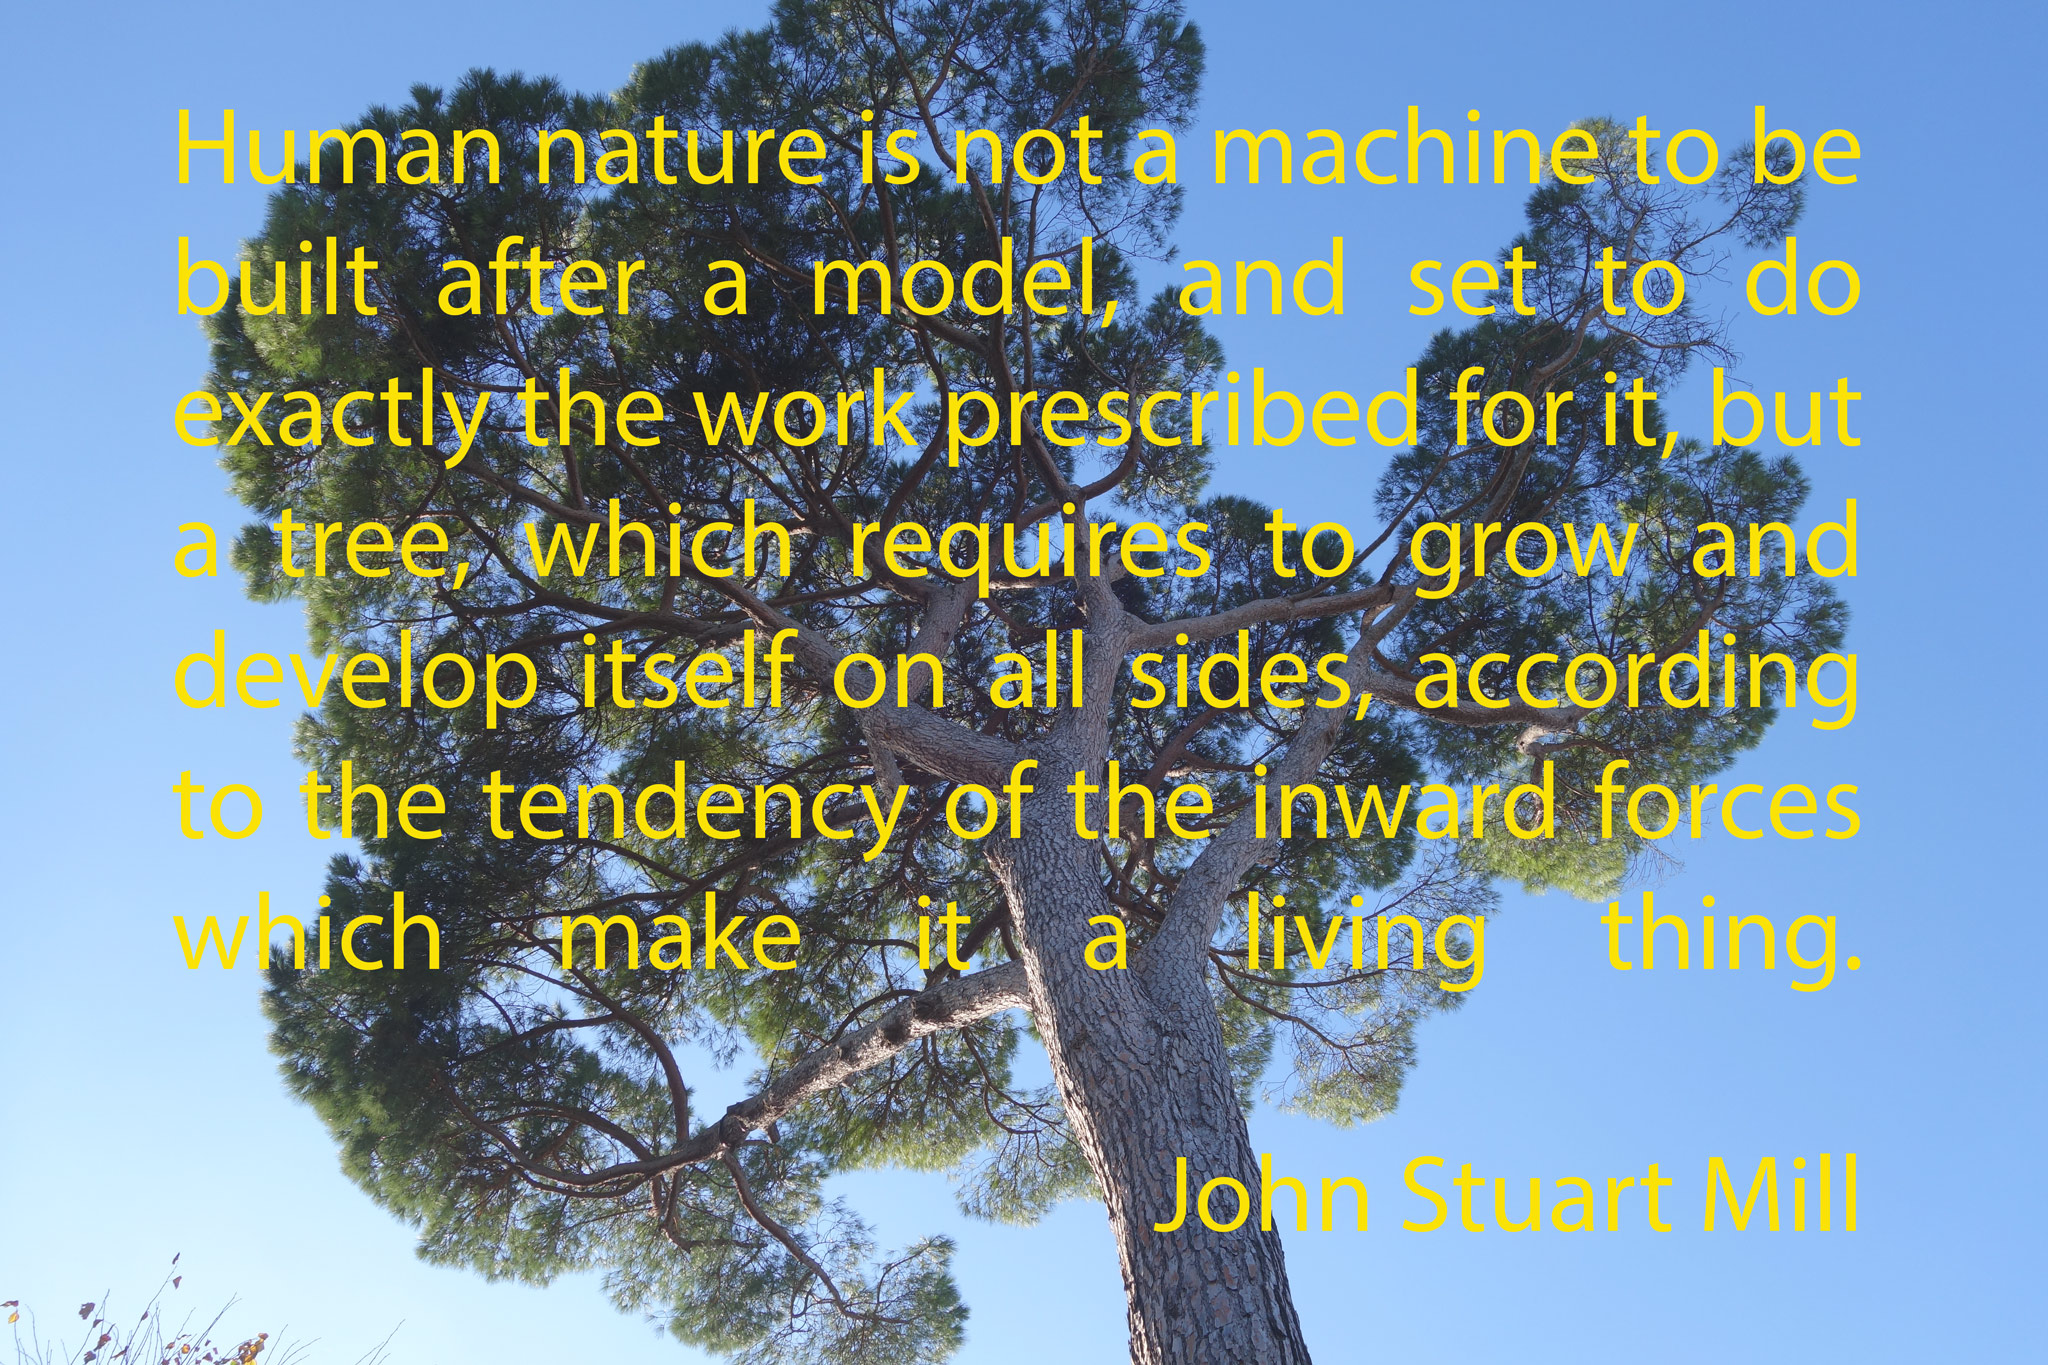 John Stuart Mill's Image of Human Life Like a Tree